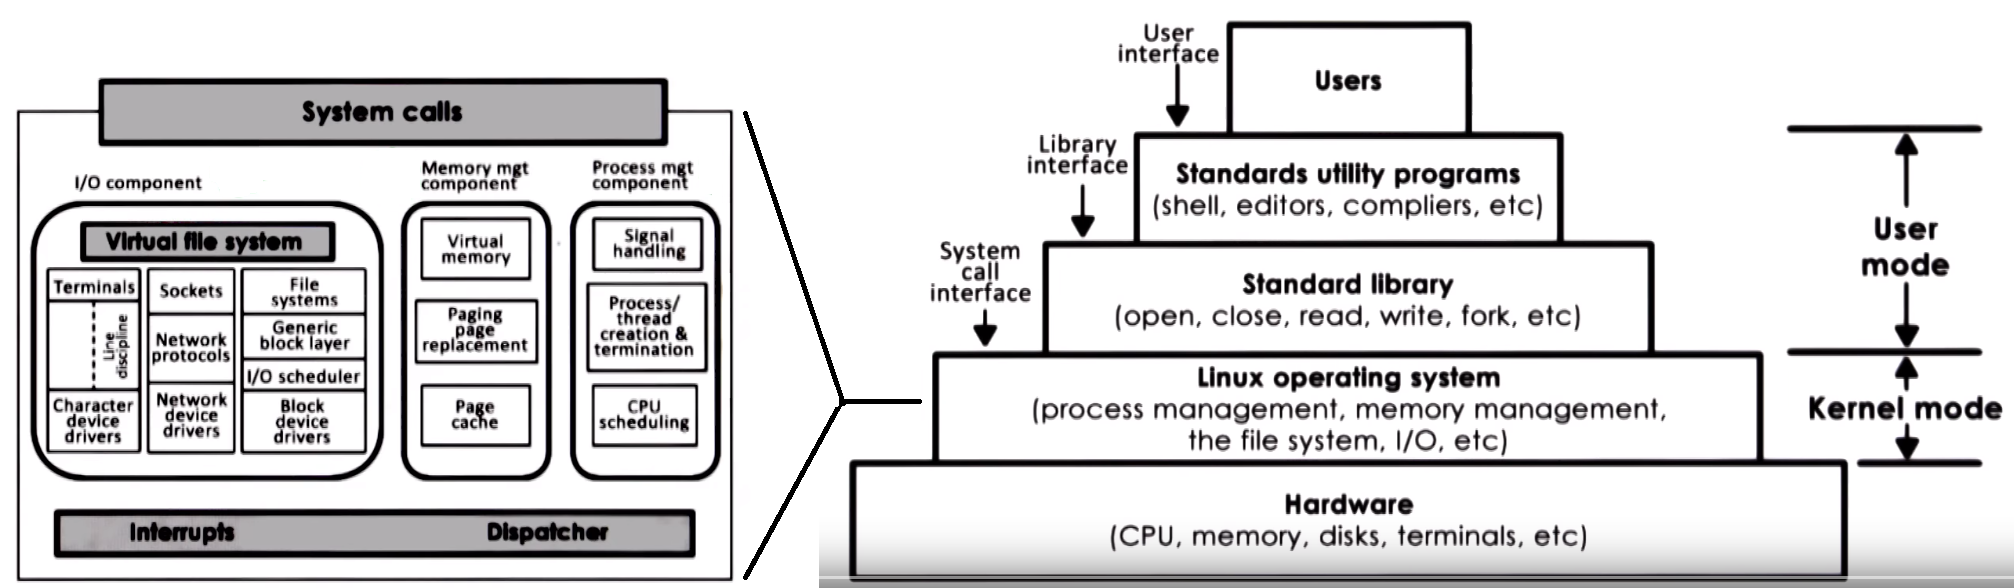 Linux Architecture